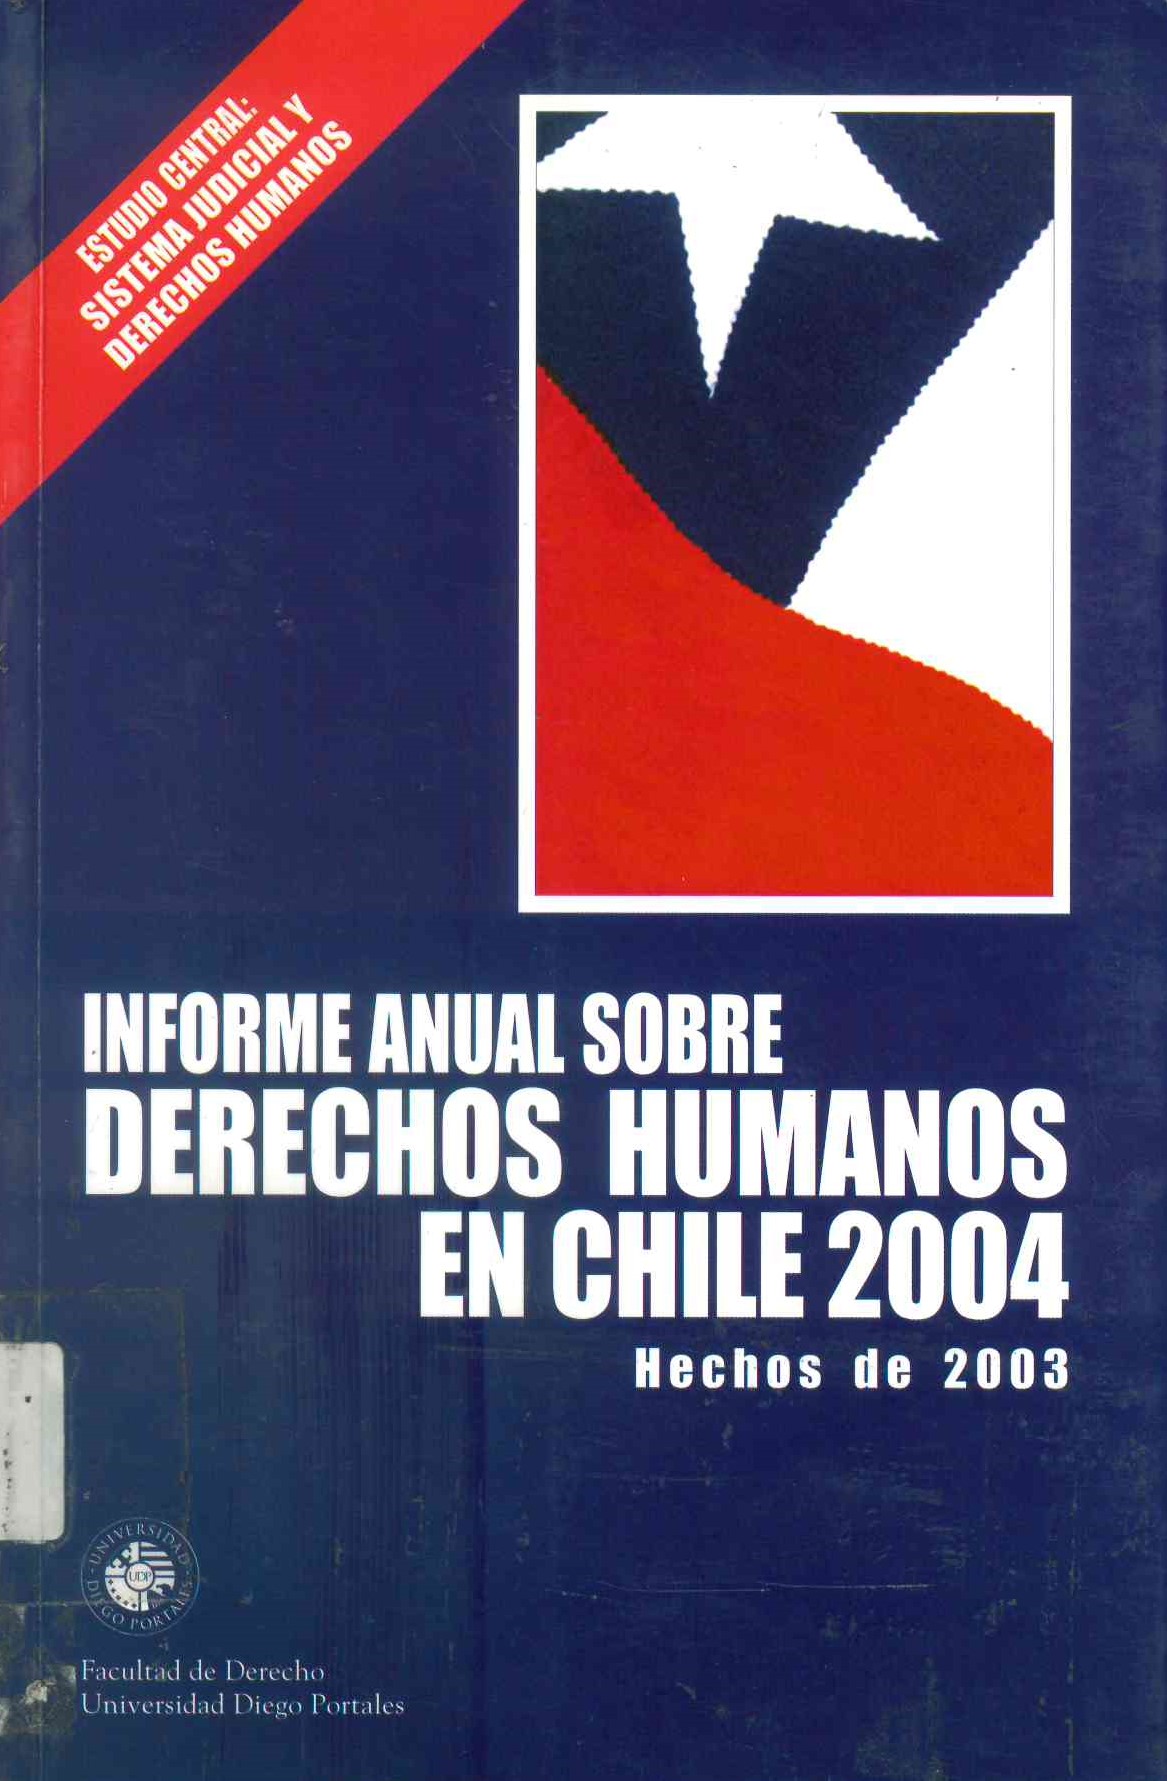 Informe anual sobre derechos humanos en Chile 2004 : hechos de 2003